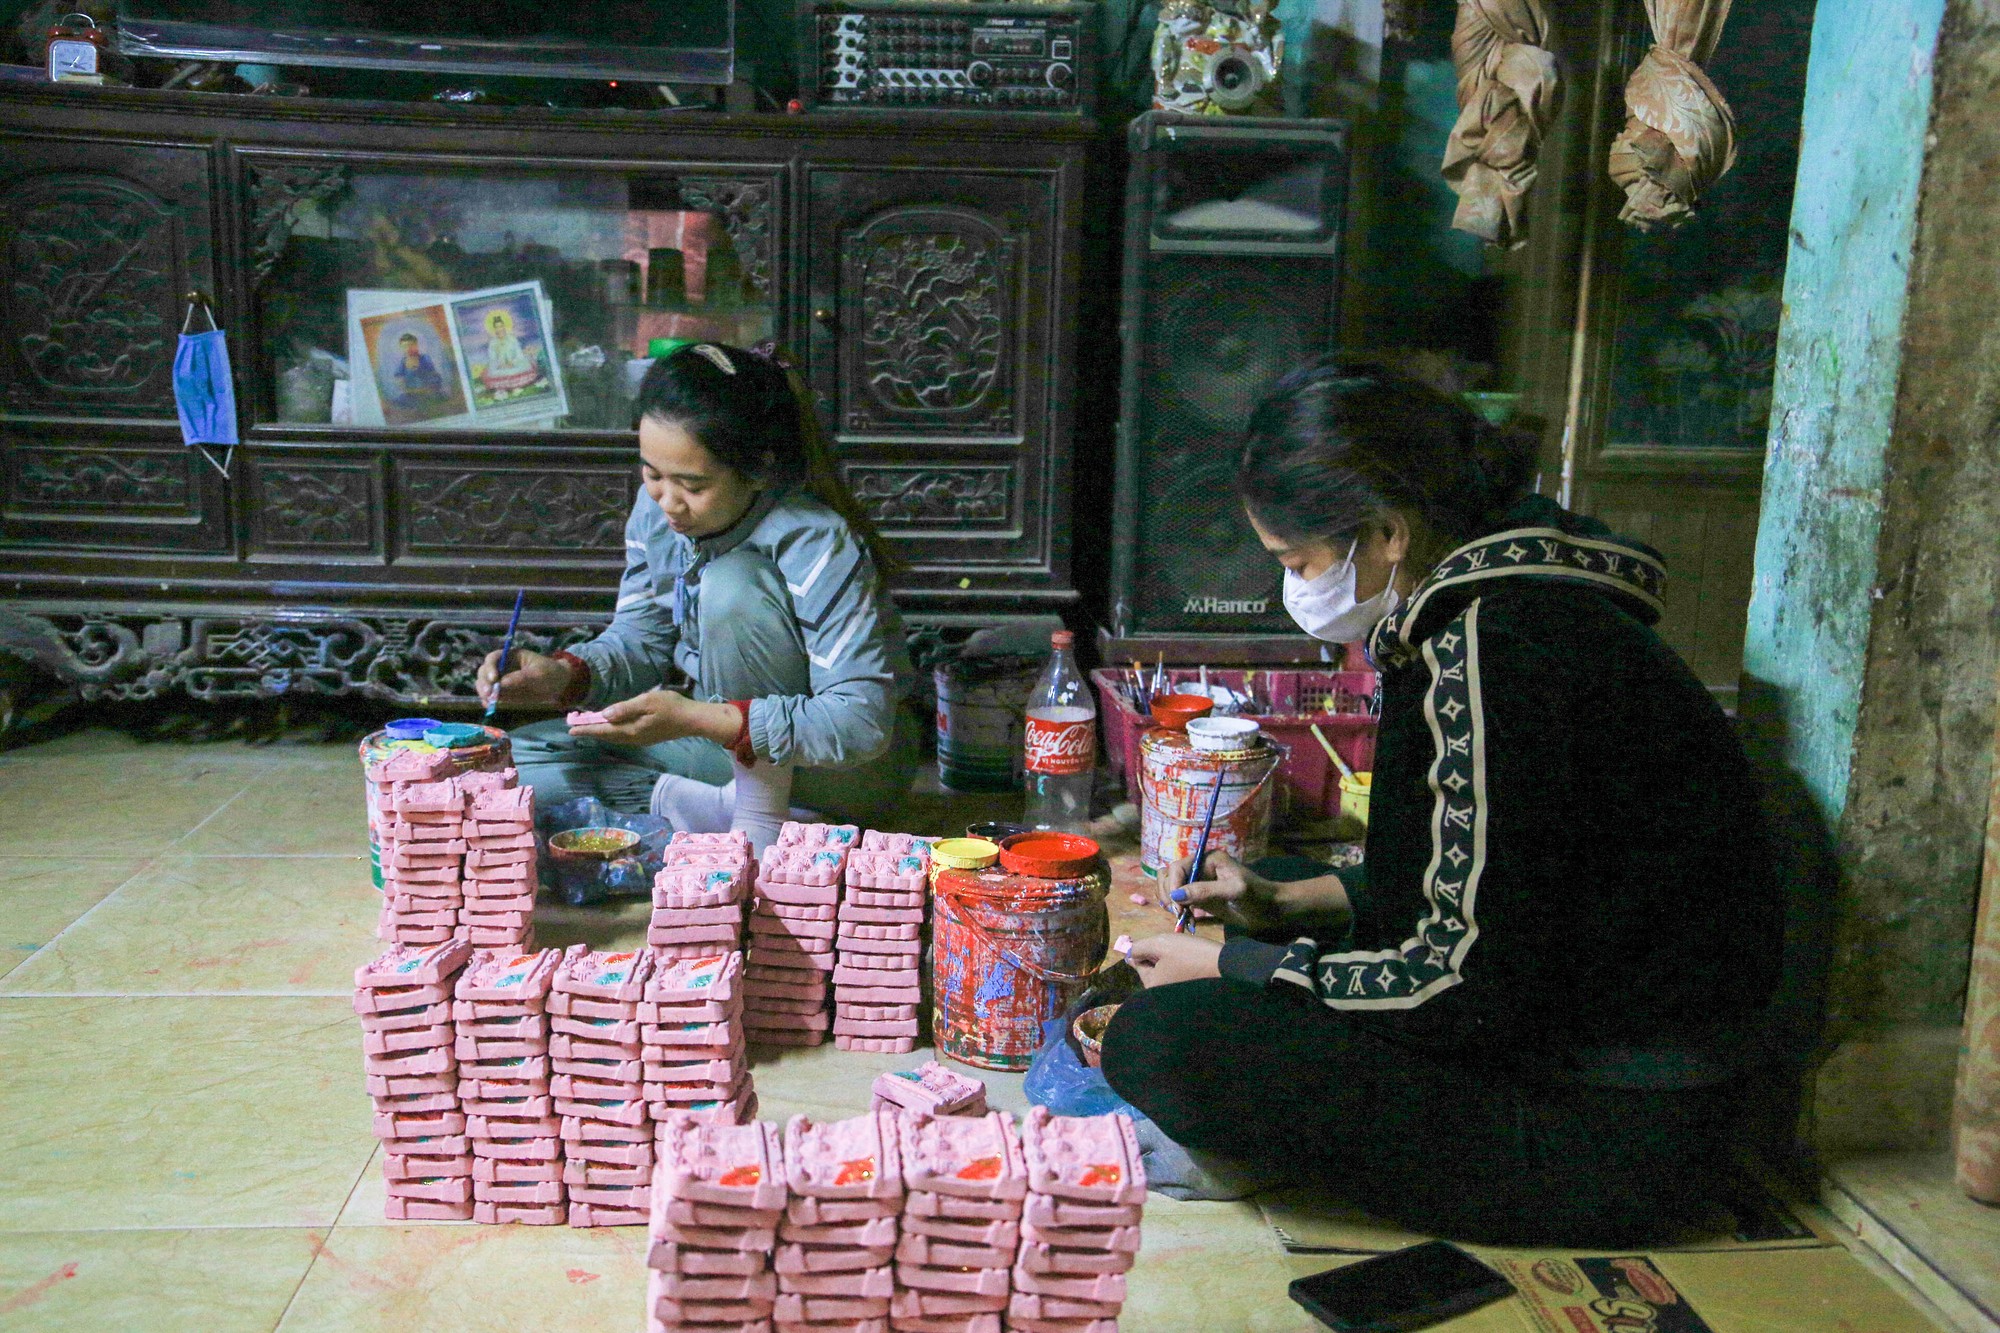 Tuy nhiên, với tín ngưỡng thờ cúng, các hộ vẫn hi vọng sản phẩm ngày càng được nhiều người biết đến, giúp cho làng nghề được duy trì và phát triển; cũng như giữ được nét đẹp văn hóa truyền thống của người Việt Nam. (Ảnh: Hoàng Hải).